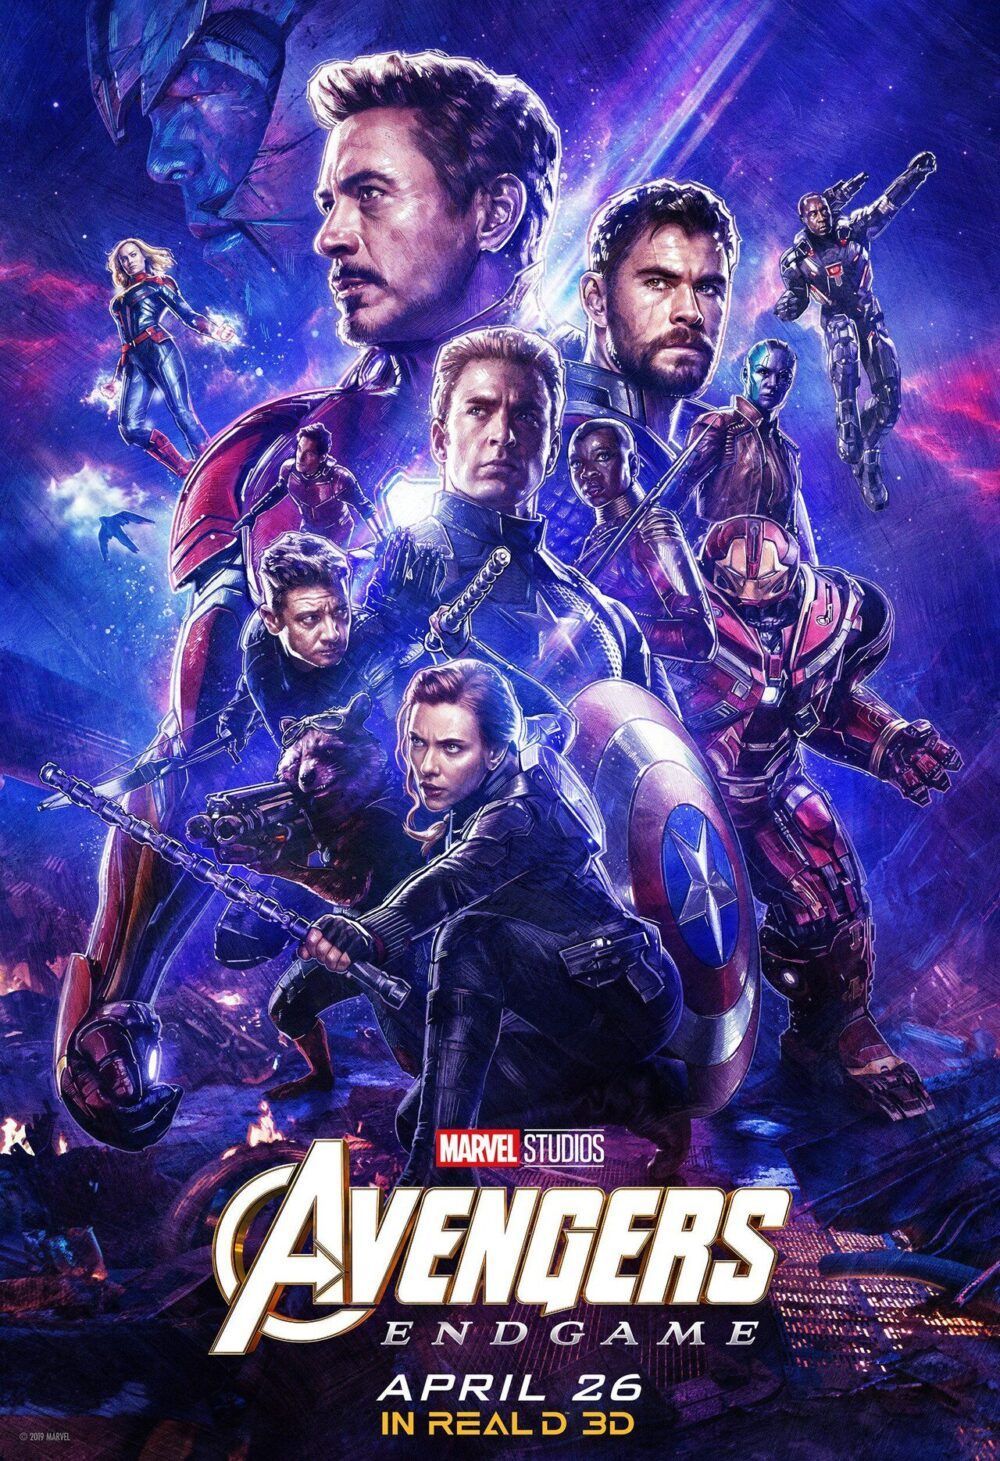 Poster chinh thuc cho Endgame e1578281933829 - Avengers: Endgame và lời chào đẹp nhất cho bản anh hùng ca tráng lệ